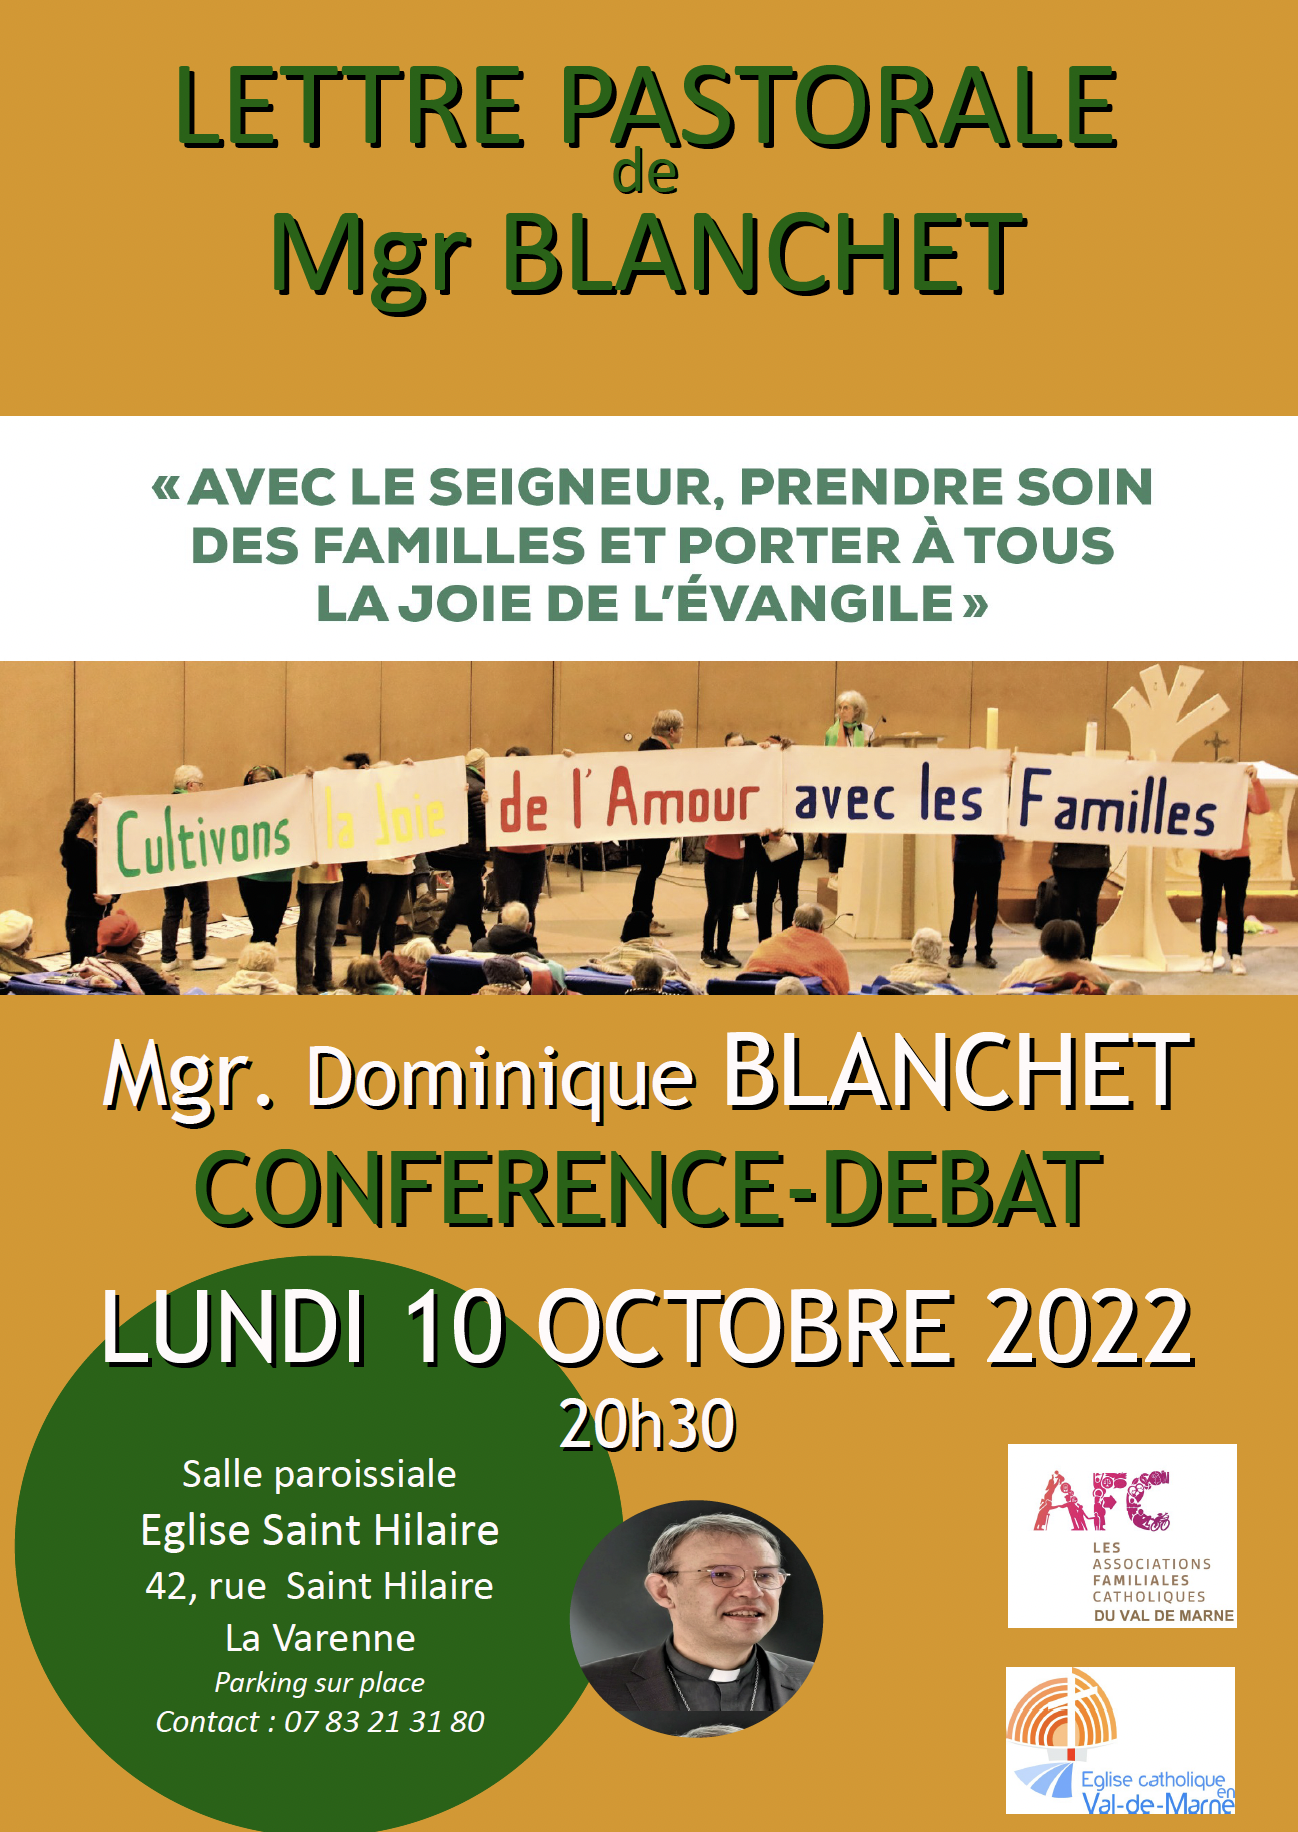 AFC : Conférence de Monseigneur Blanchet sur la Lettre pastorale lundi 10 octobre